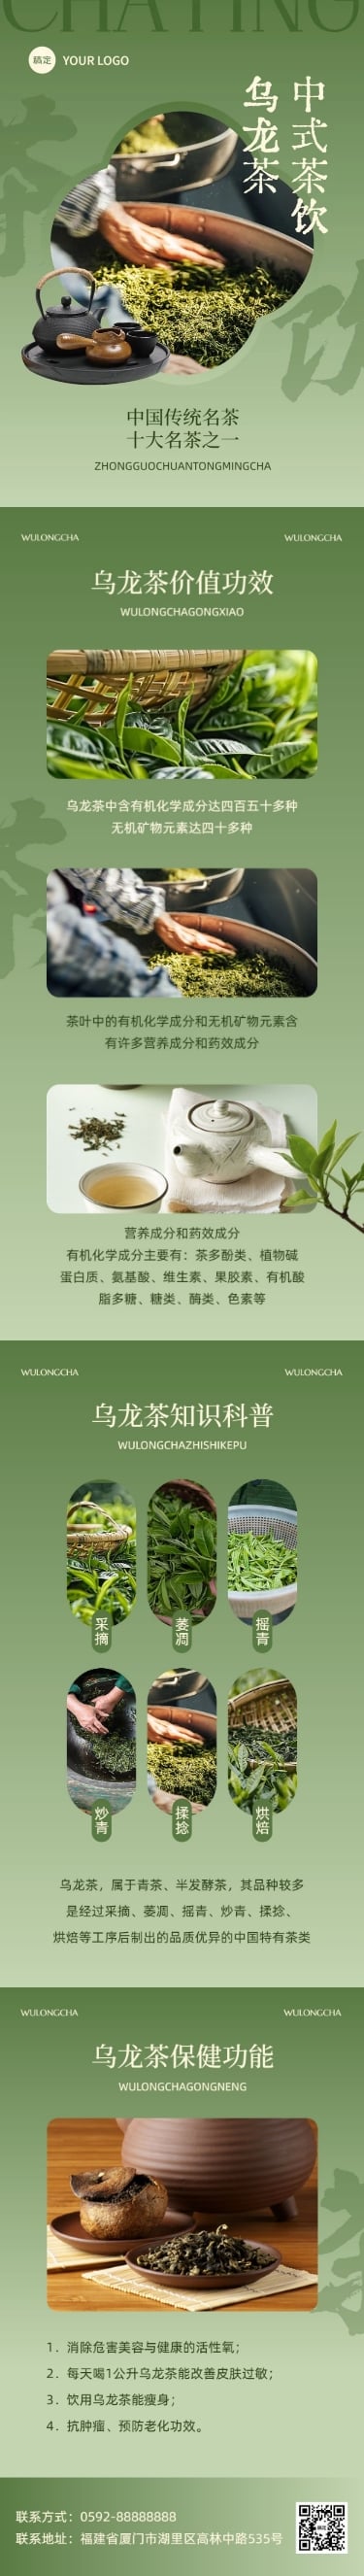 茶叶营销宣传微信公众号文章长图